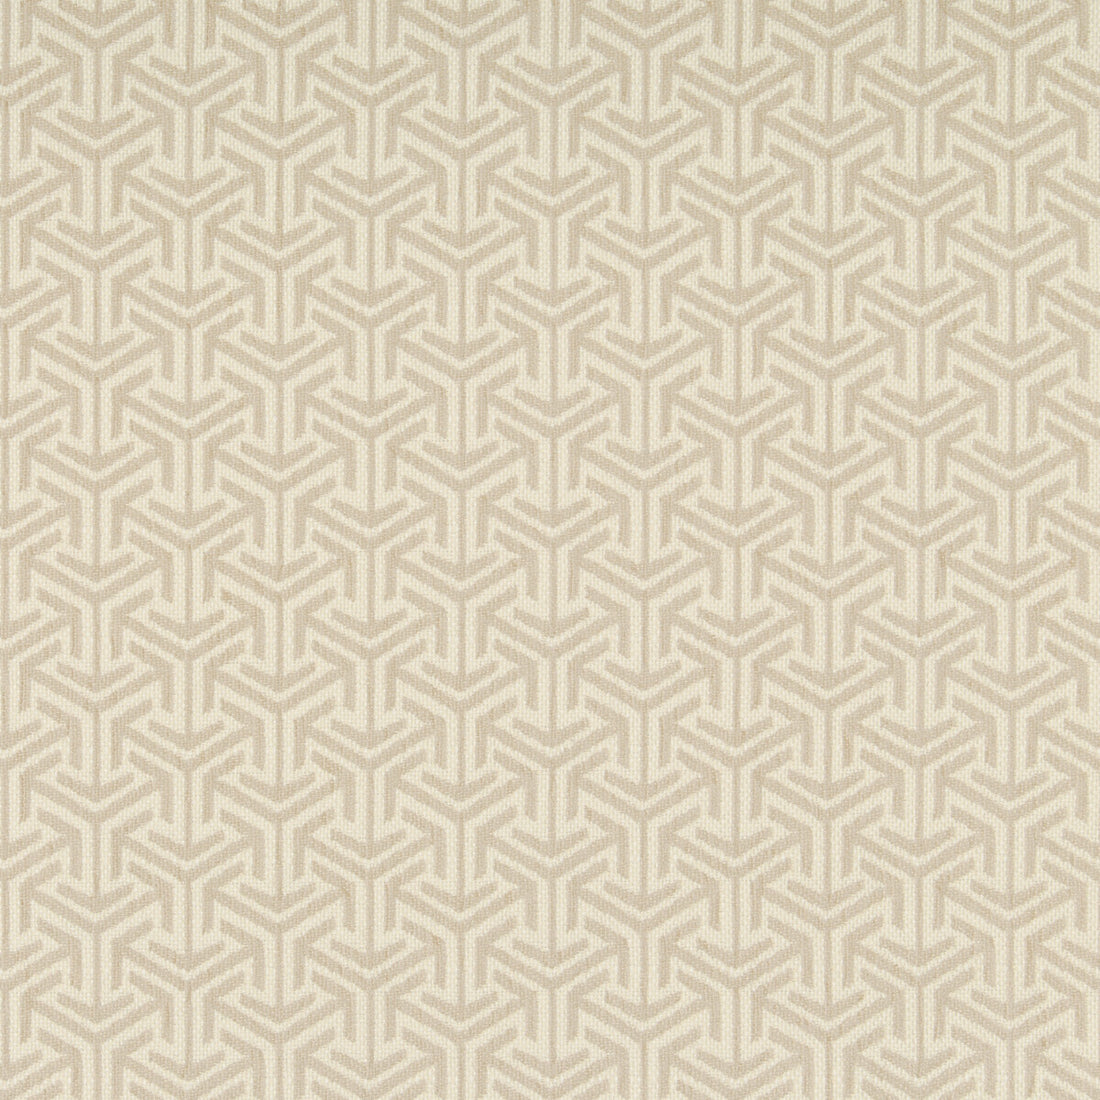 Kravet Design fabric in 35715-106 color - pattern 35715.106.0 - by Kravet Design